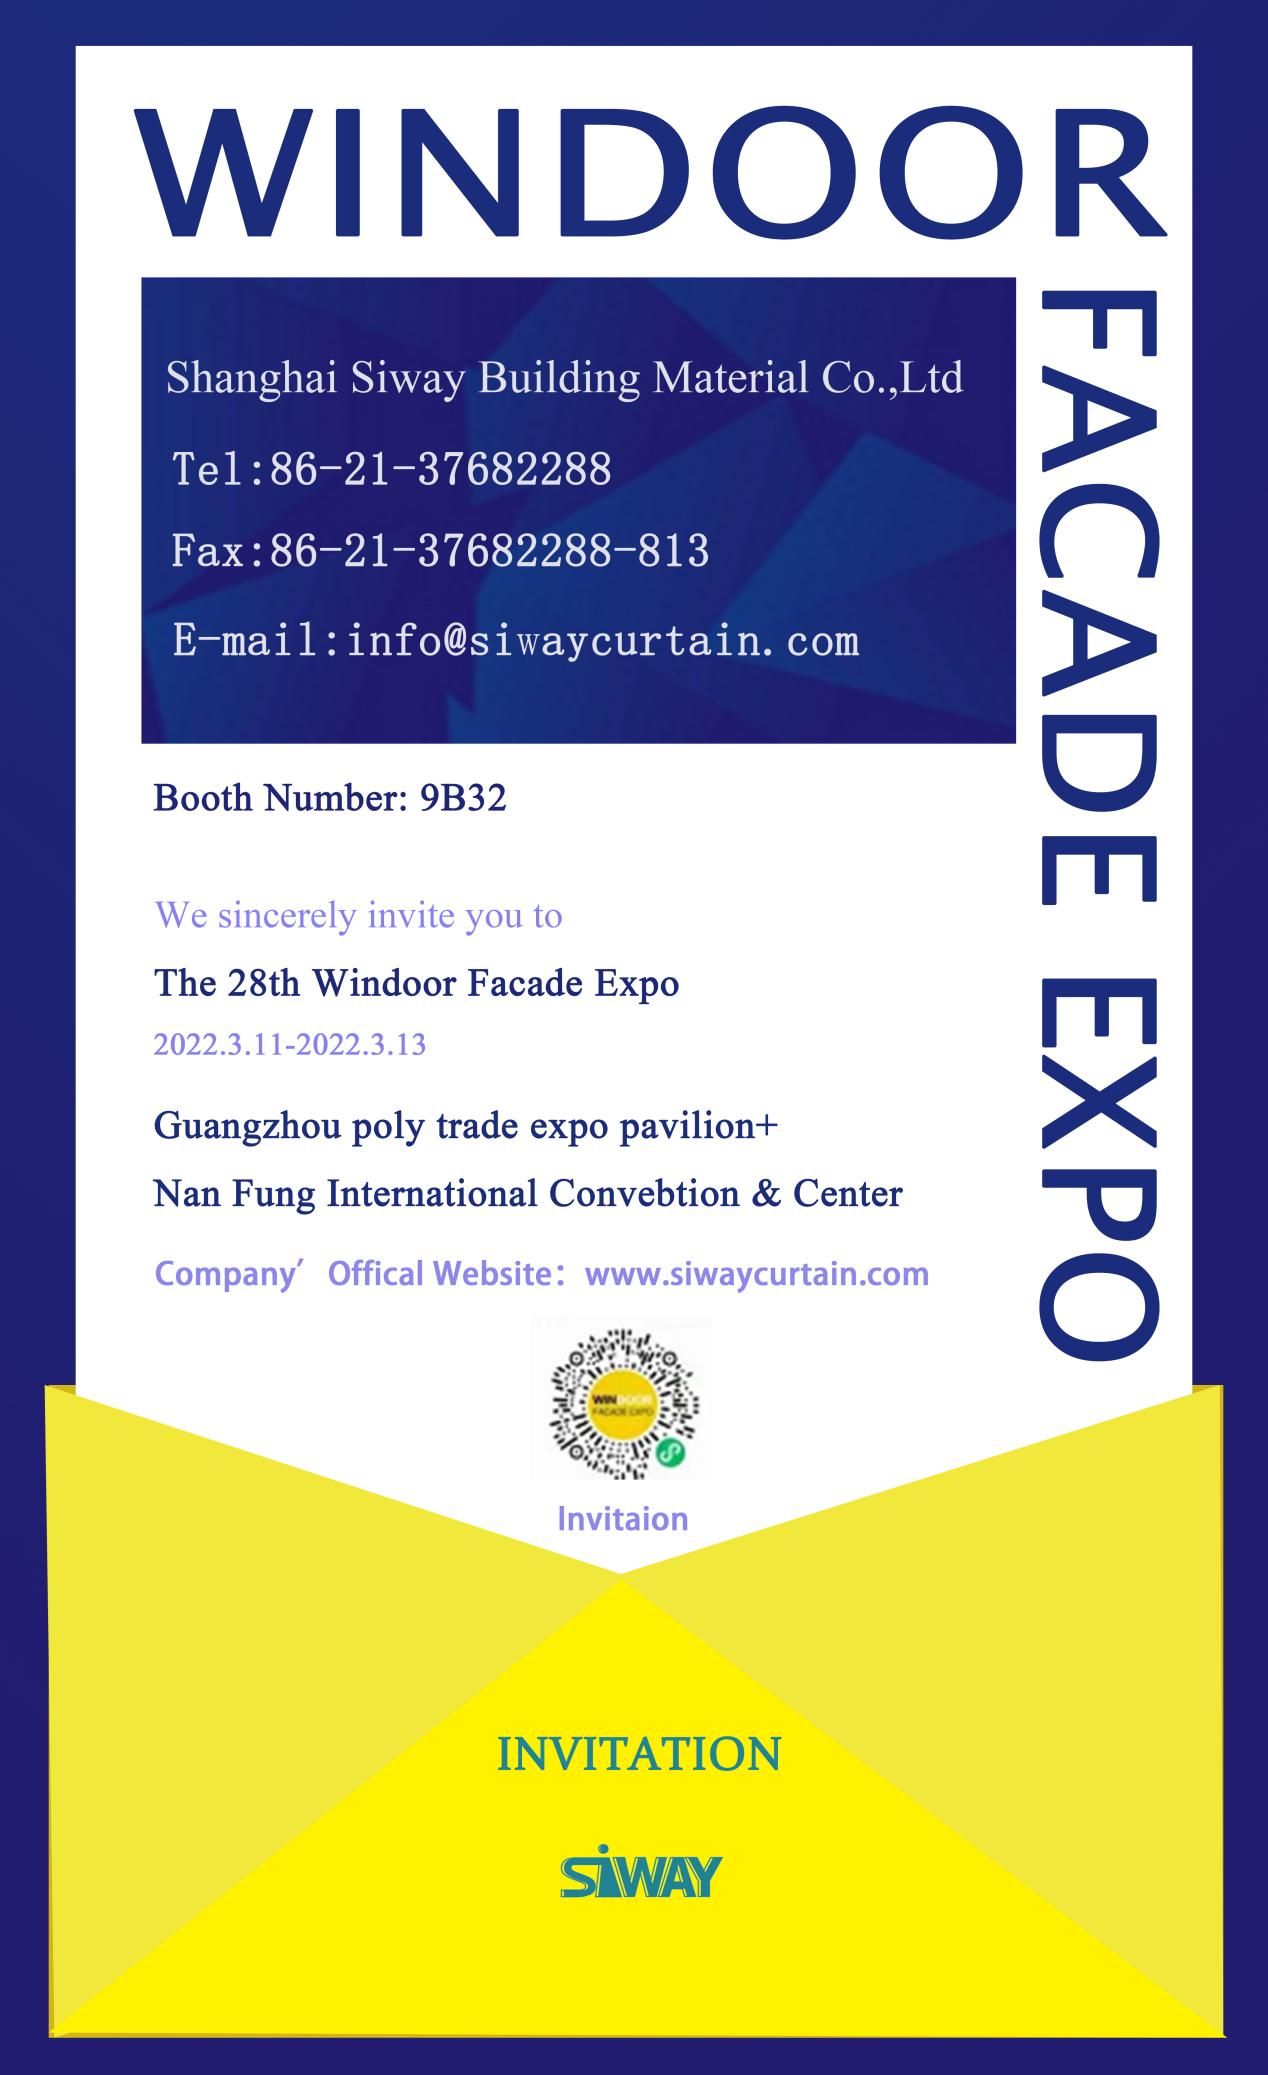 1995 ರಿಂದ, Windoor Facade Expo 5 ಶತಕೋಟಿ f (1) ಗಿಂತ ಹೆಚ್ಚಿನ ವಾರ್ಷಿಕ ಮಾರಾಟದೊಂದಿಗೆ Jianmei, Fenglu, Xingfa ಮತ್ತು ಇತರ ಉದ್ಯಮಗಳ ಜೊತೆಯಲ್ಲಿದೆ.